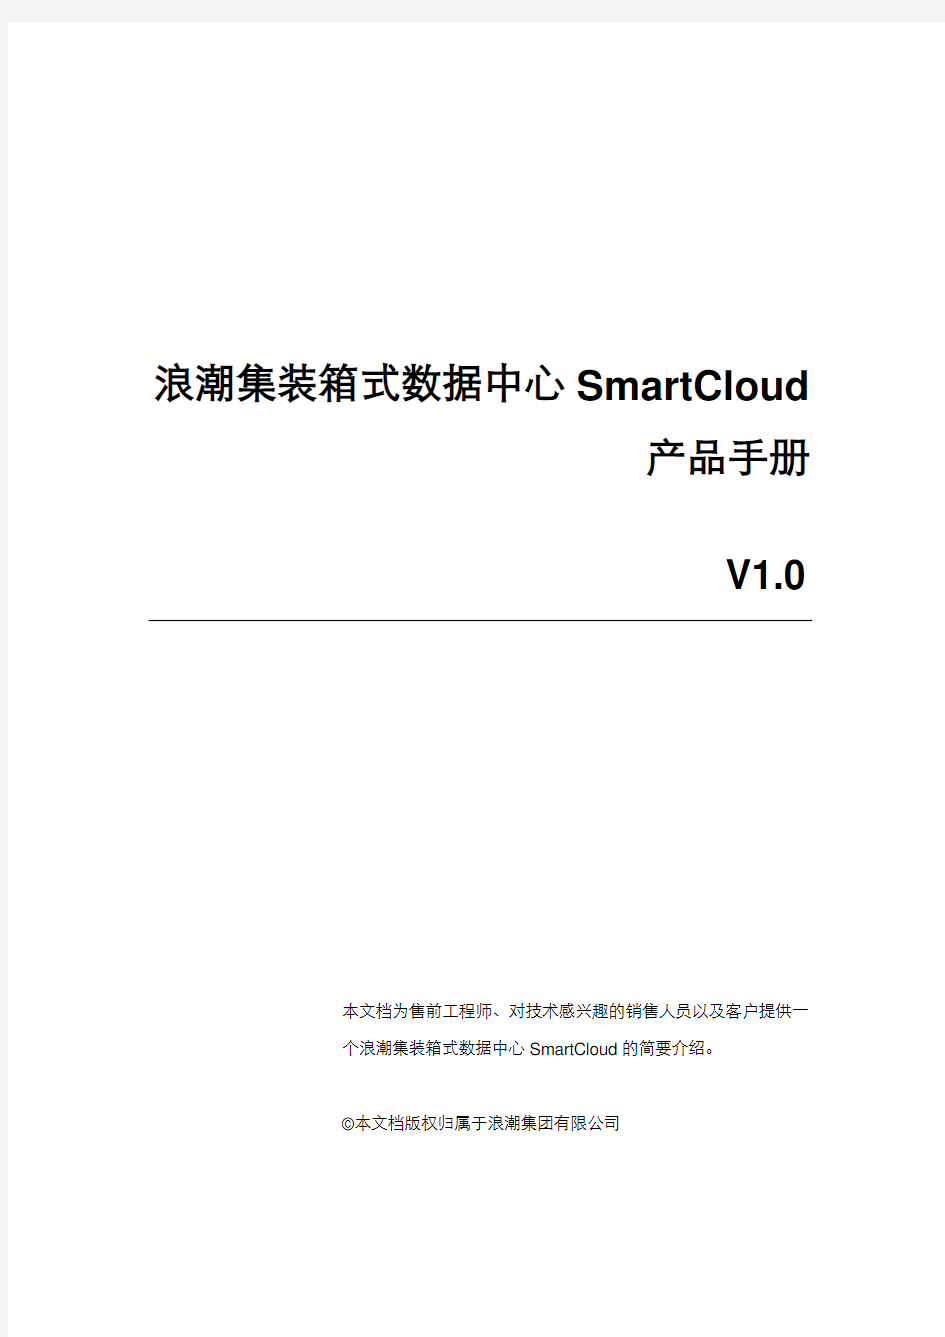 SmartCloud产品手册